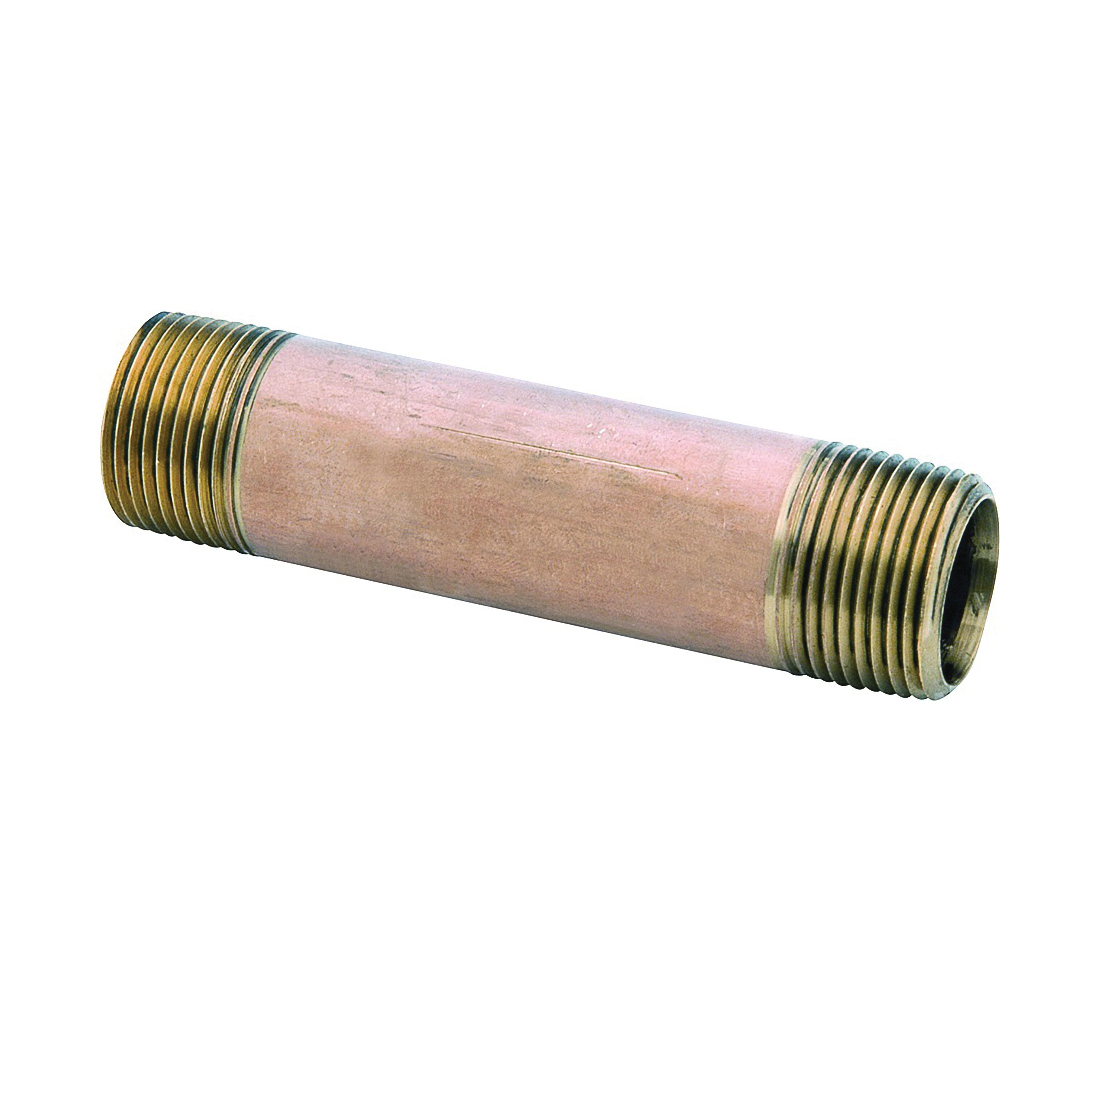 38300-0430 Pipe Nipple, 1/4 in, MNPT, Brass, 870 psi Pressure, 3 in L